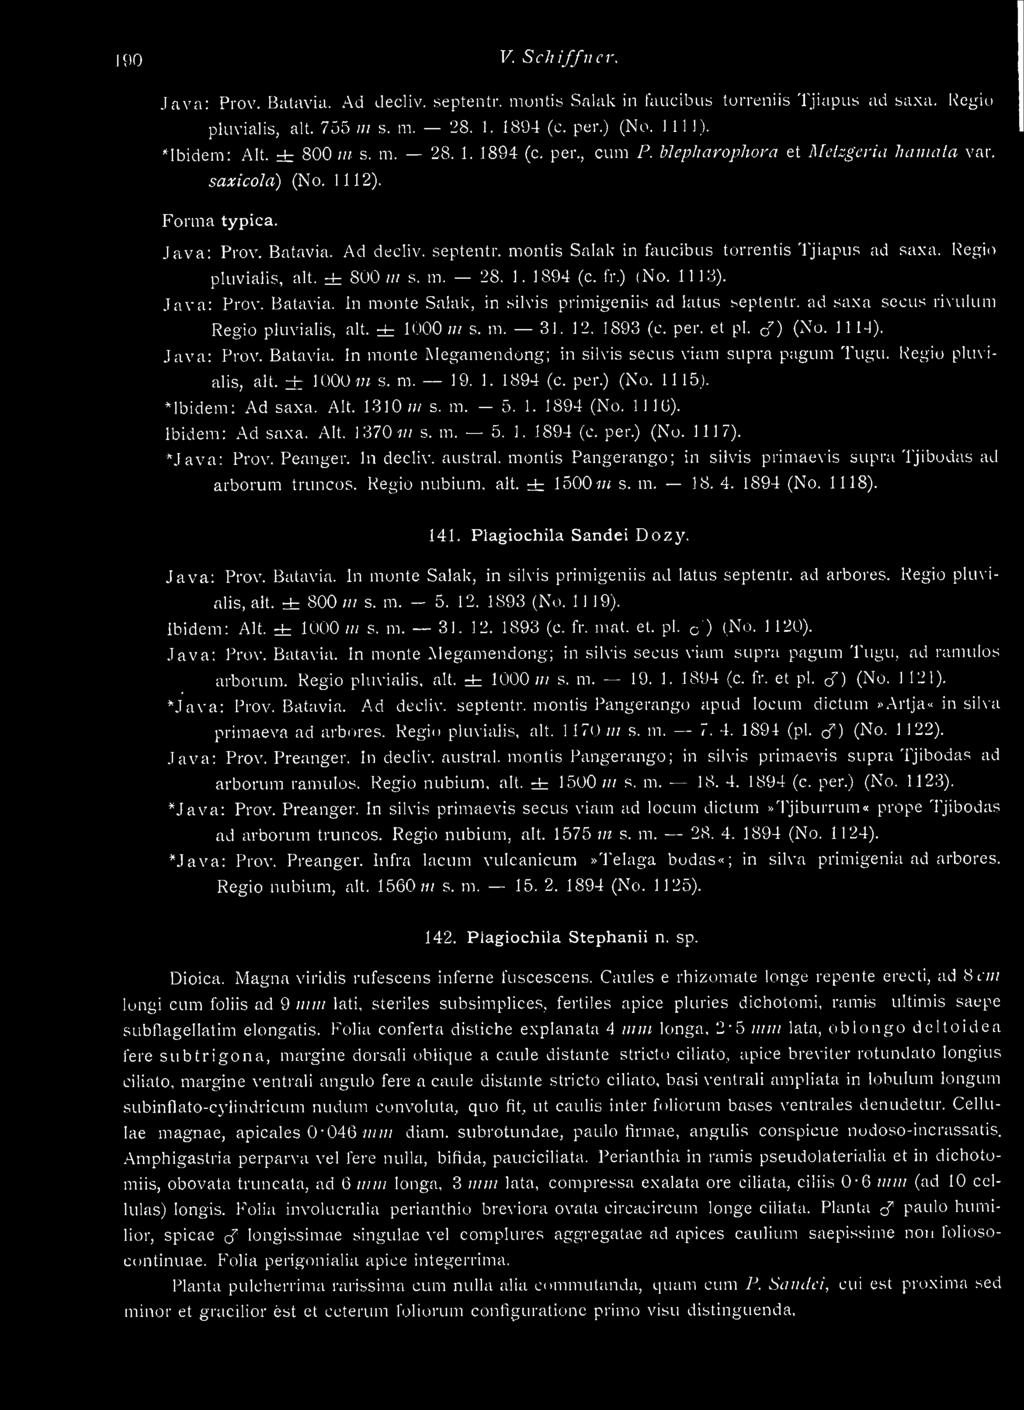 montis Salak in faucibus torrentis Tjiapus ad saxa. Regio pluvialis. alt. ± 800 iii s. m. 28. 1. 1894 (c. fr.) (No. 1113). Java: Prov. Batavia. In monte Salak, in silvis primigeniis ad latus septentr.